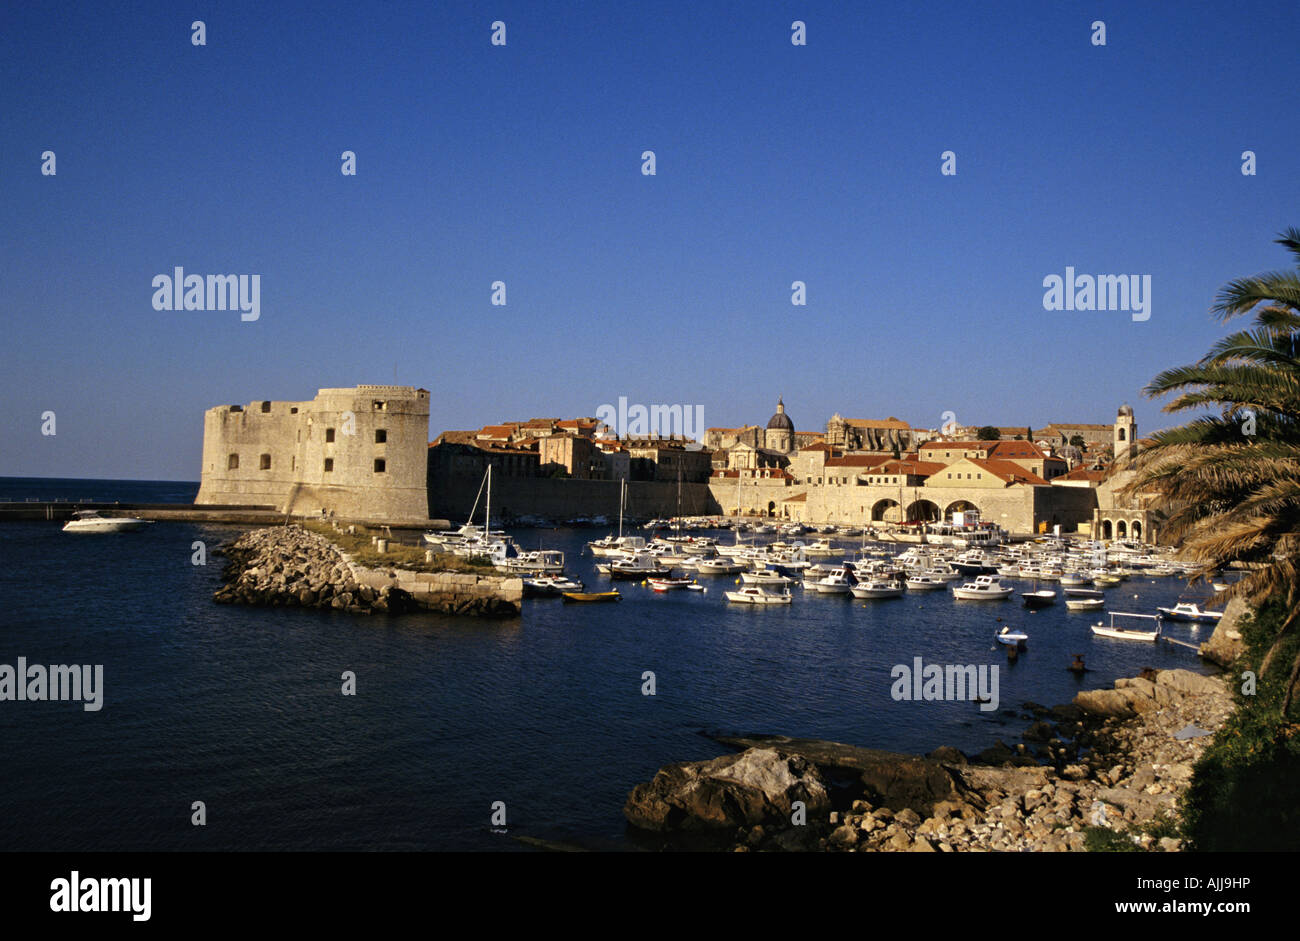 Kroatien Dalmatien Dubrovnik - Altstadt von Dubrovnik | Croatia Dalmatia Dubrovnik - Old Town Center of Dubrovnik Stock Photo